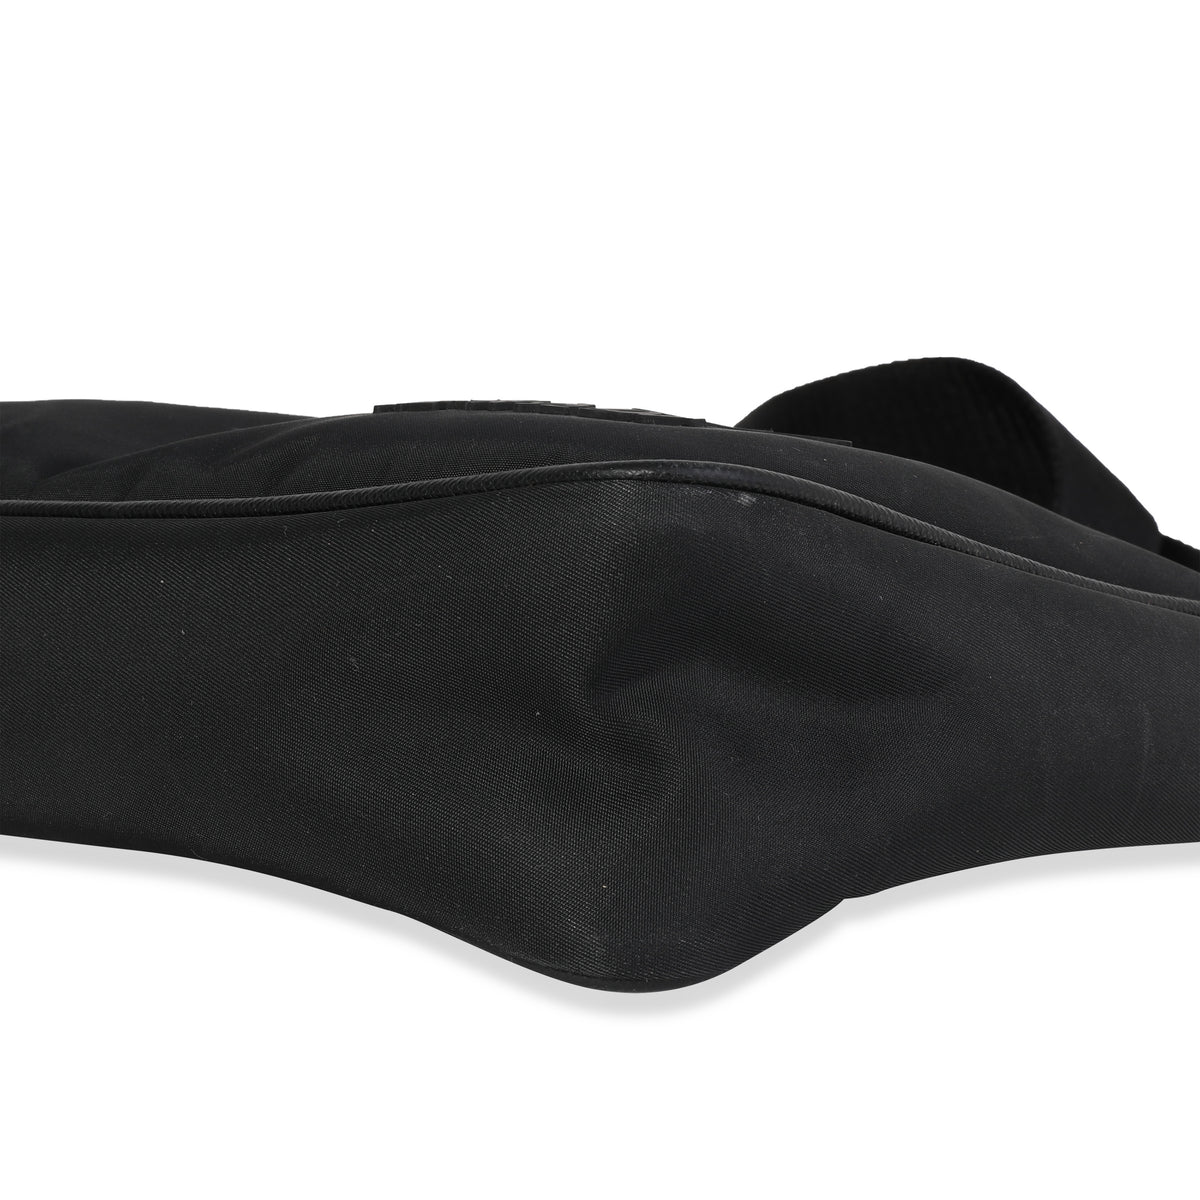 Prada Black Re-Nylon & Saffiano Leather Trim Shoulder Bag